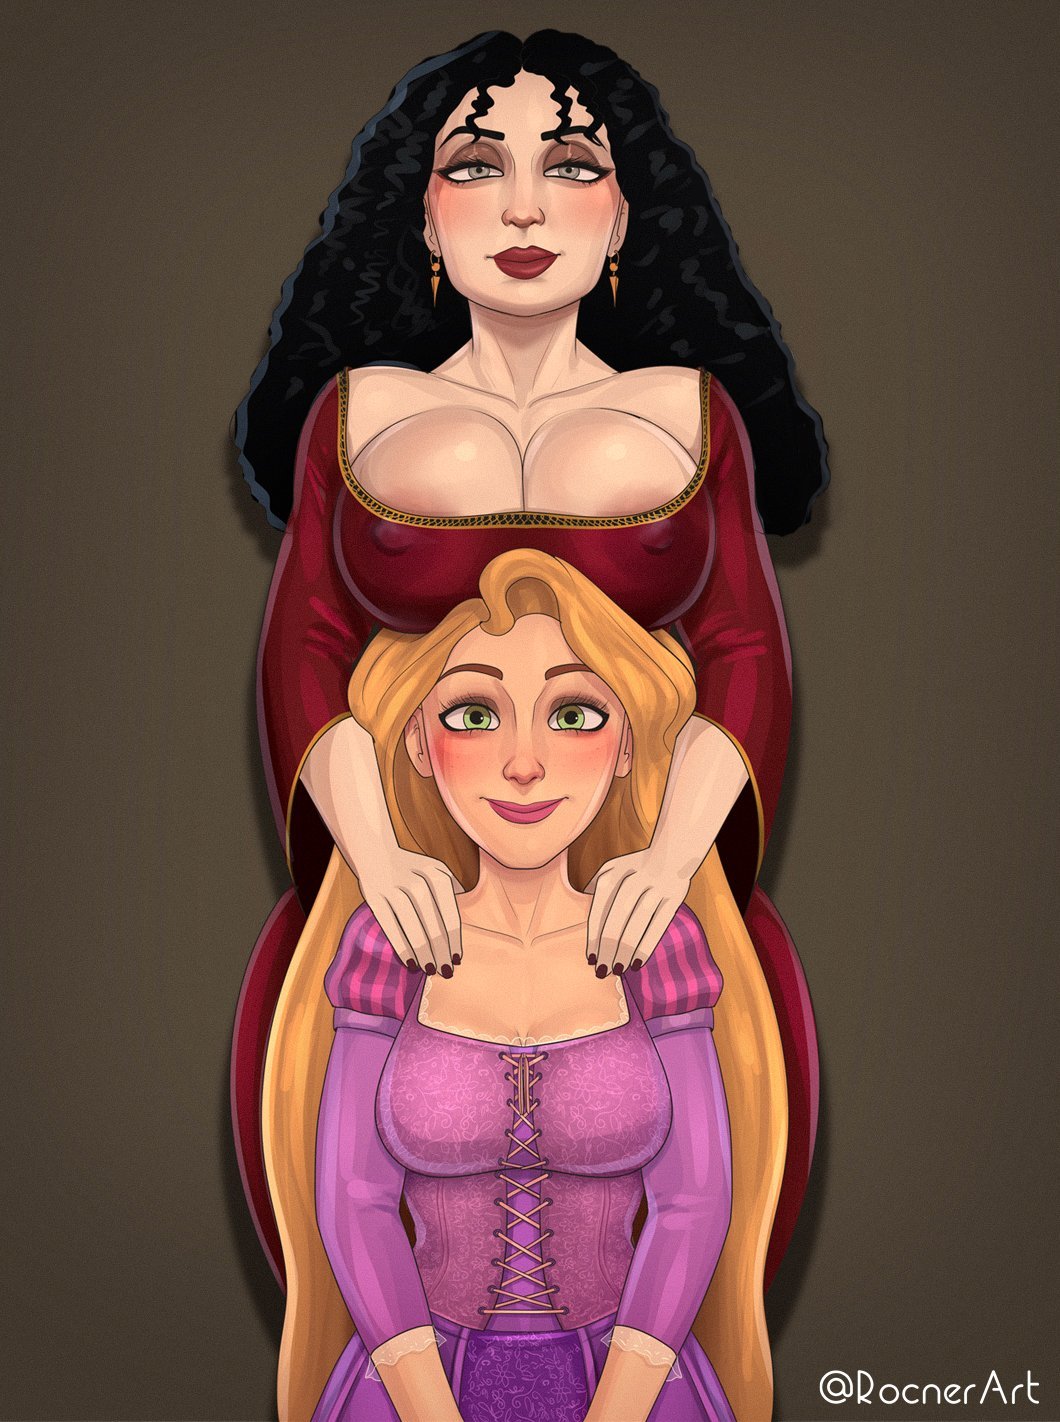 1060px x 1422px - Mother Gothel x Rapunzel comic porn - HD Porn Comics